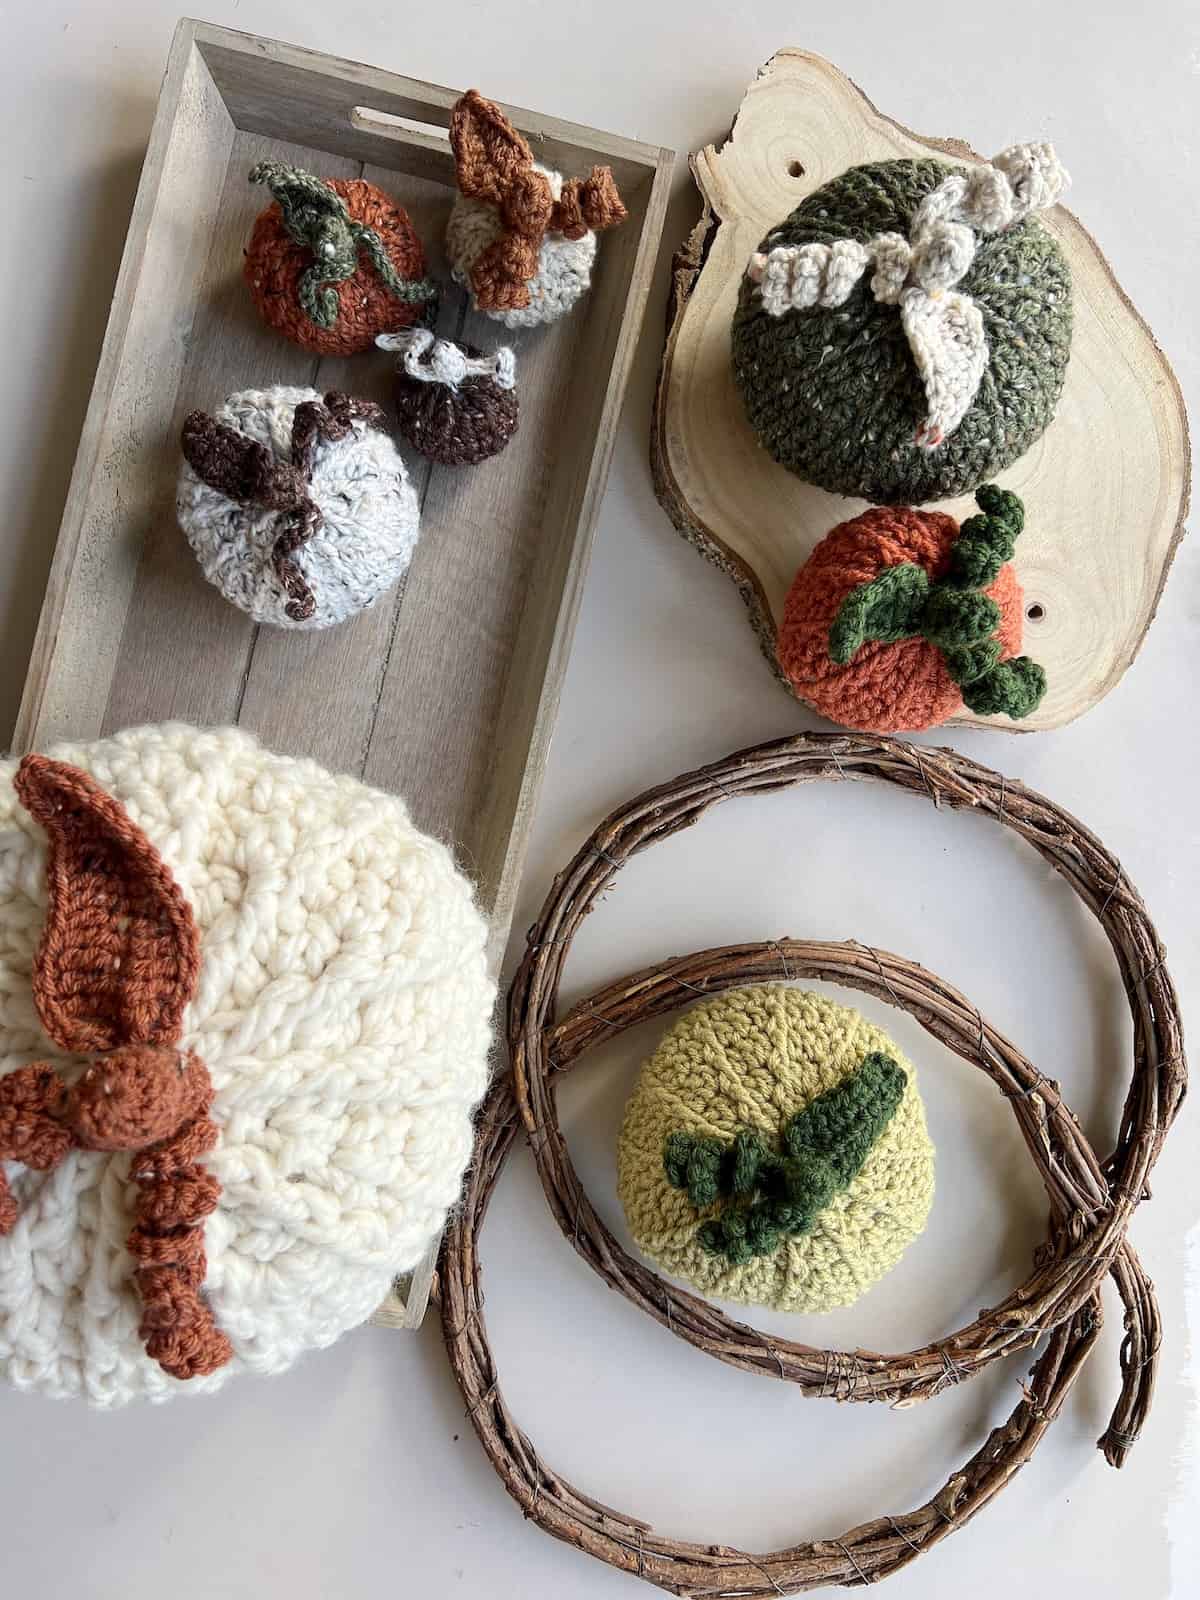 Crochet pumpkins on a wooden tray.